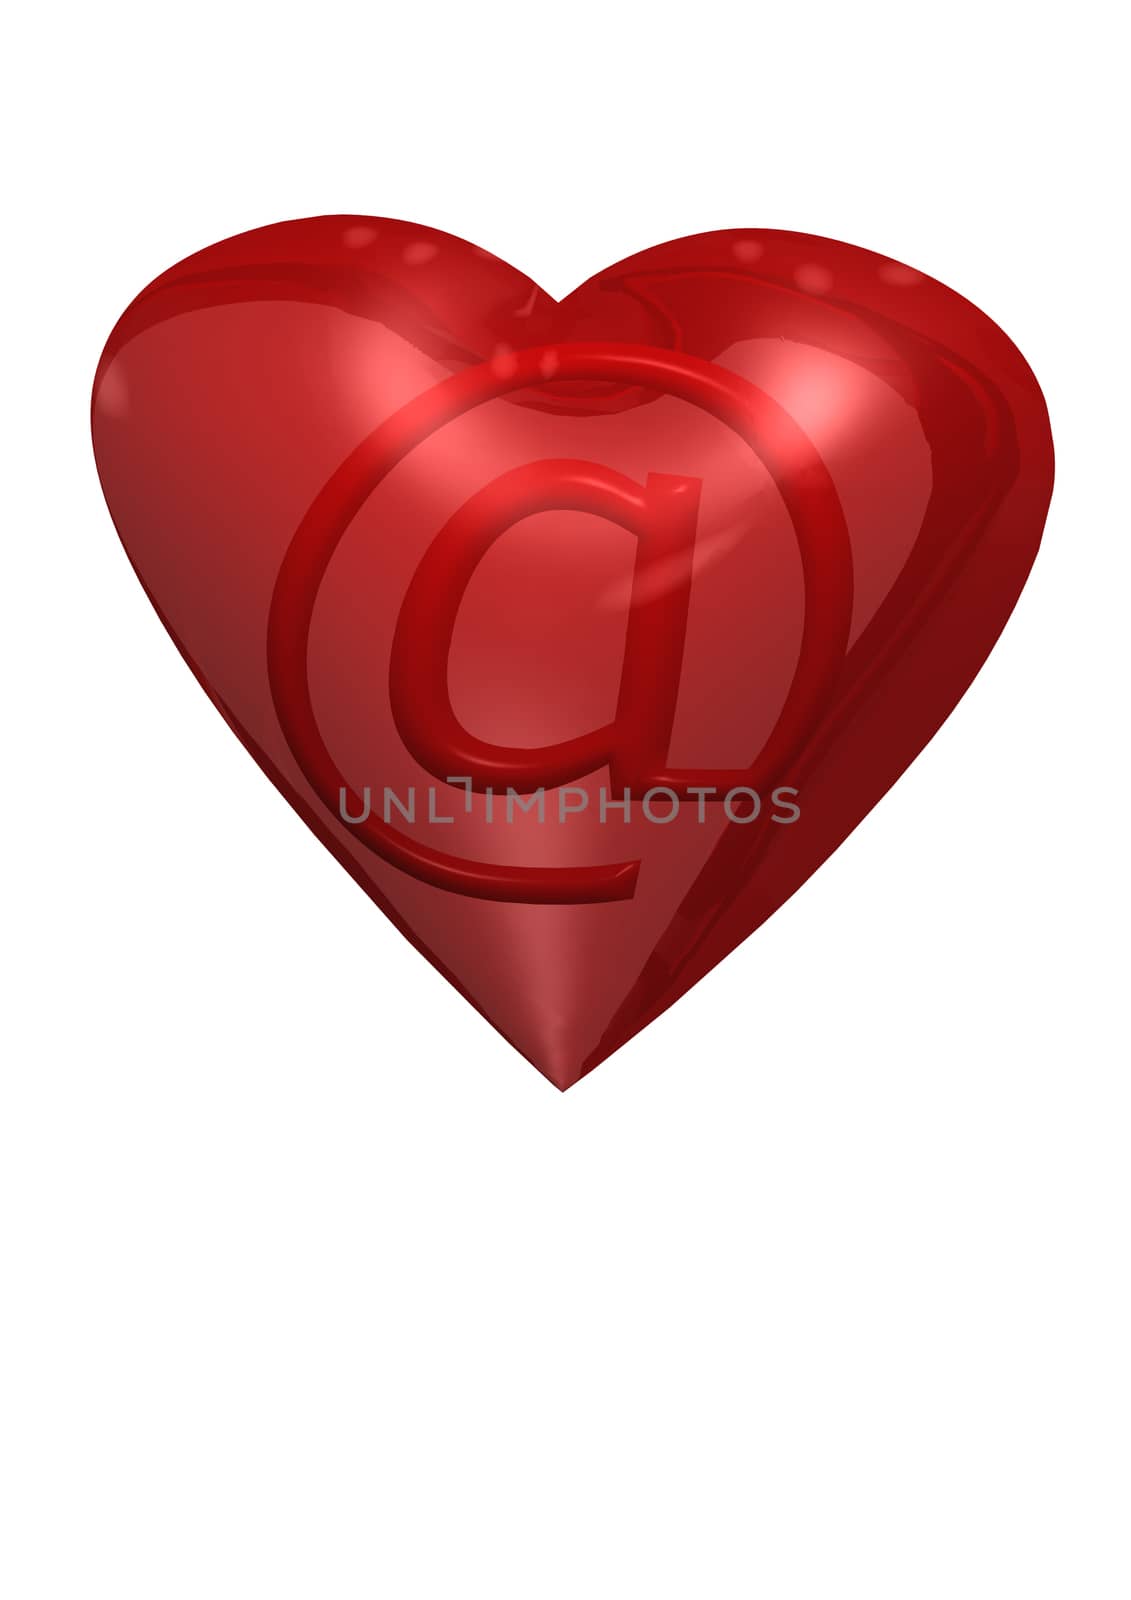 Red valentine heart. 3D render. by richter1910